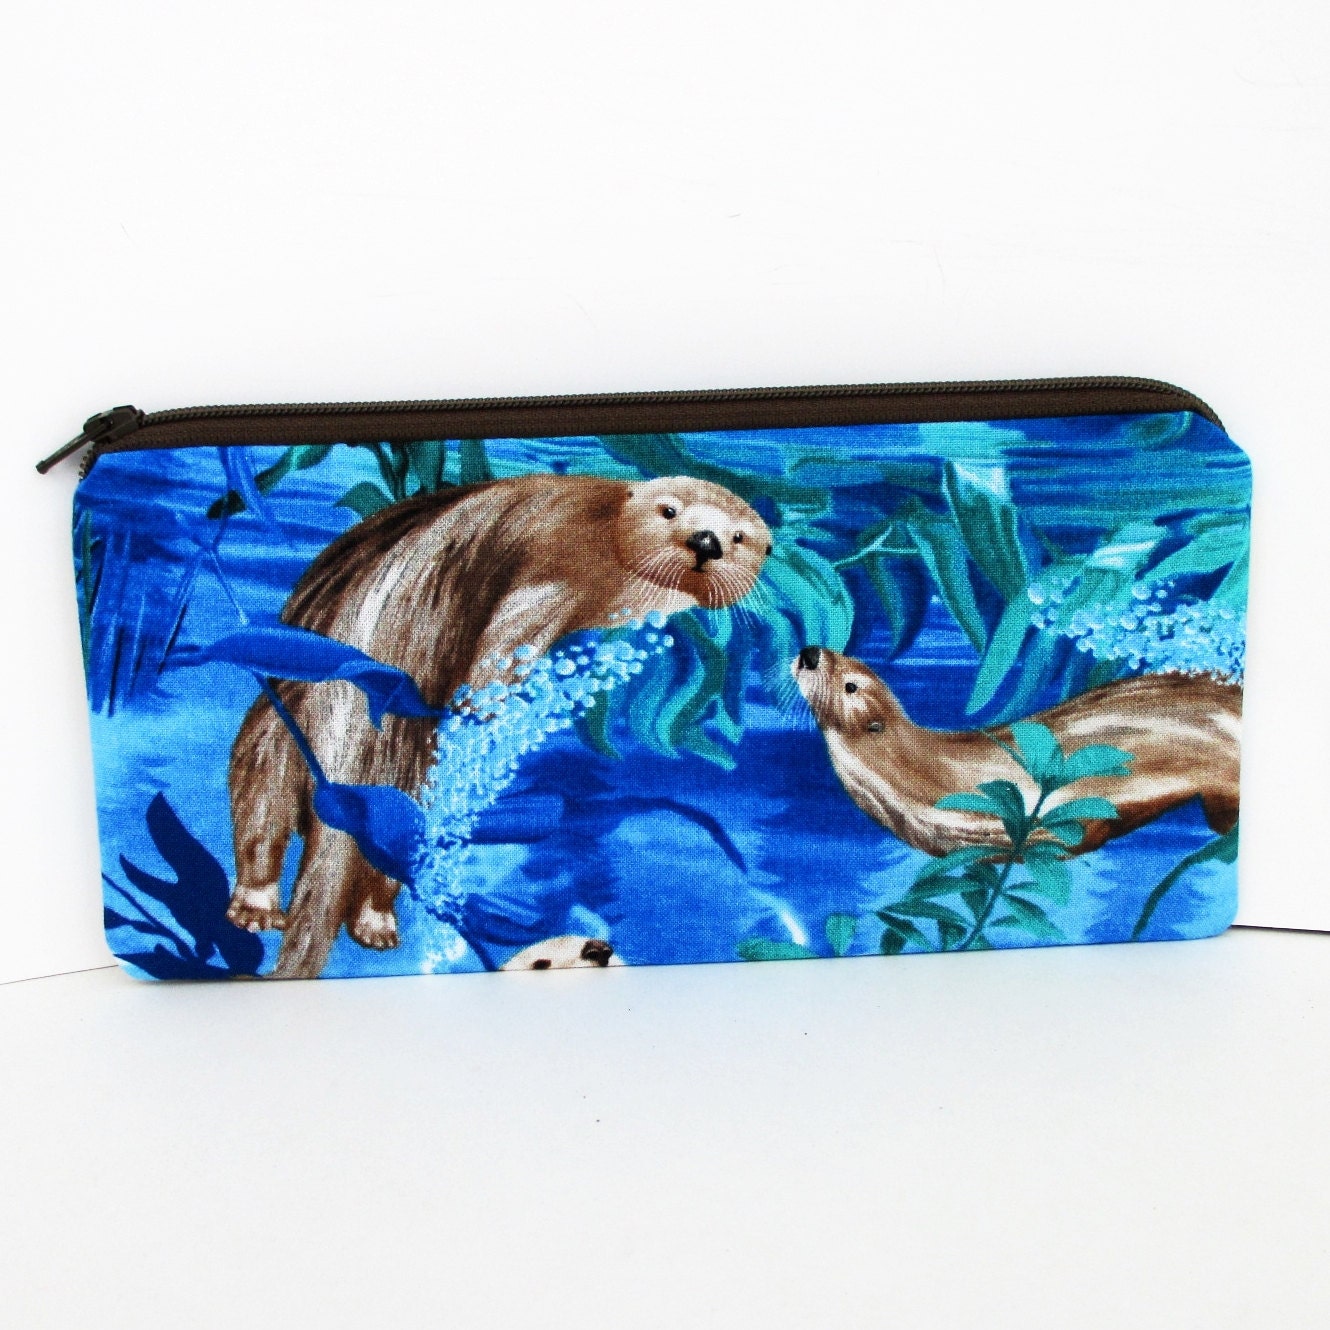 Sea Otter Pencil Pouch Long Zipper Pouch Blue Ocean Animals